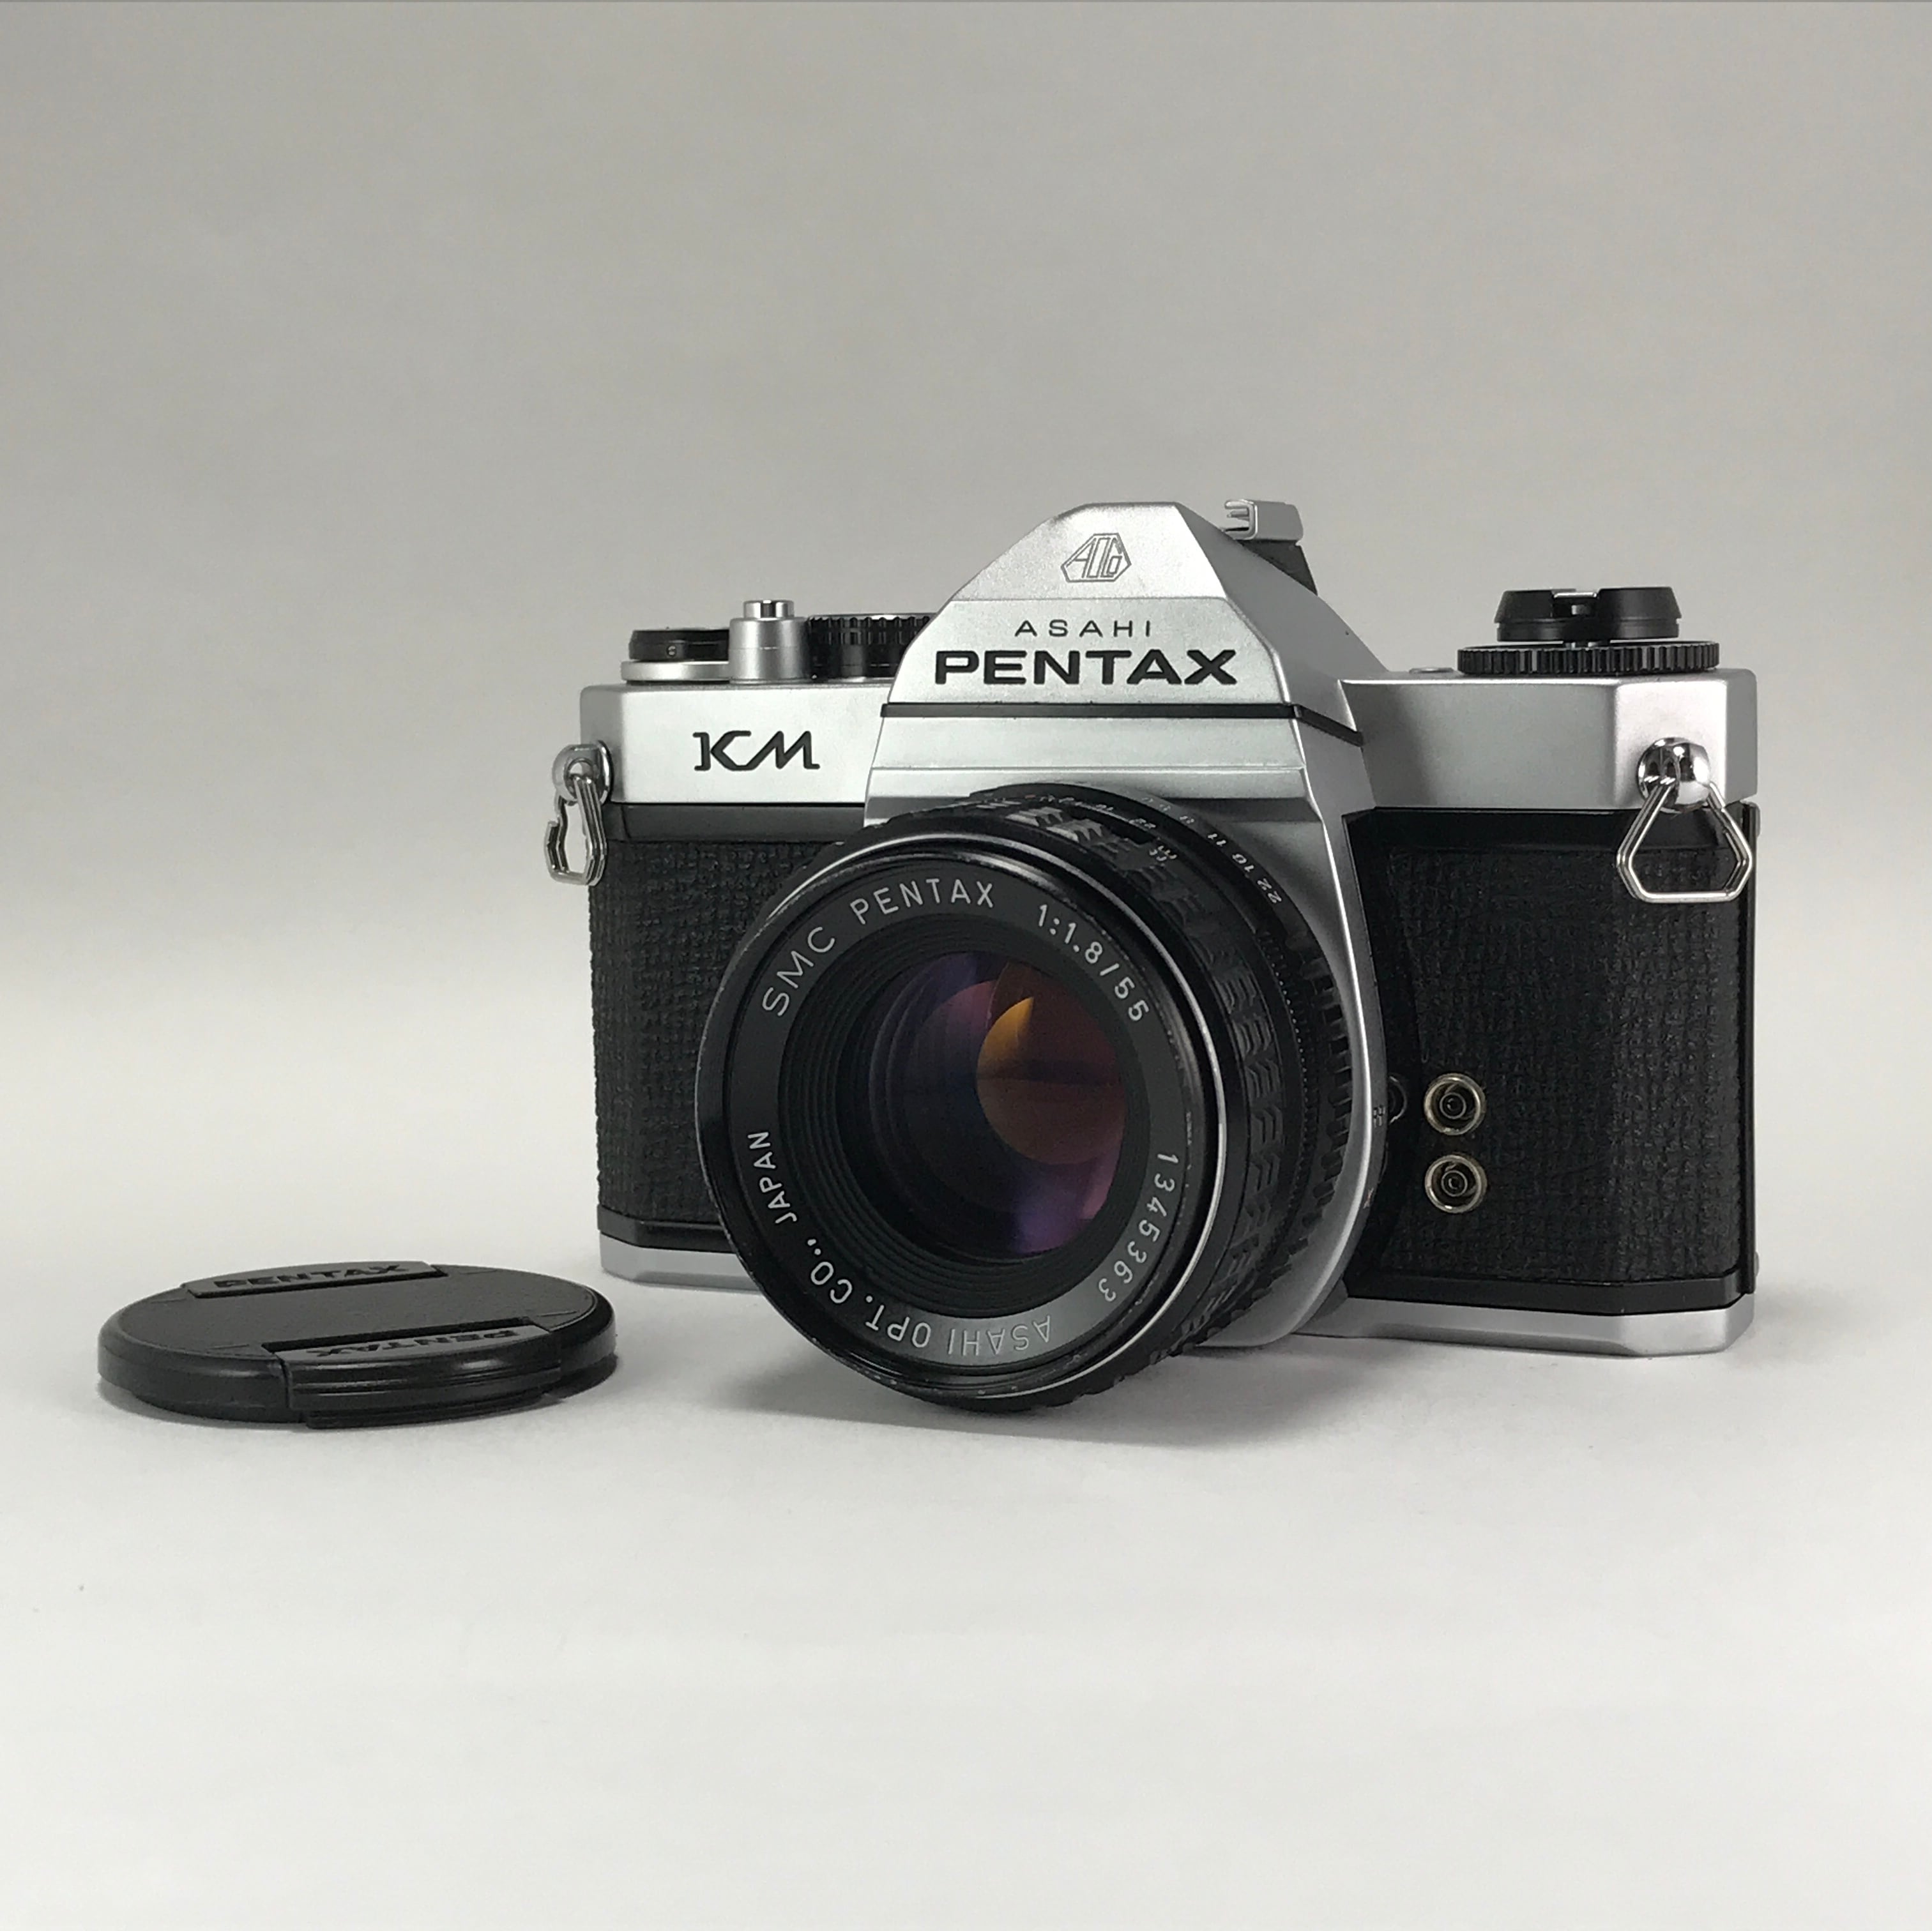 フィルムカメラASAHI PENTAX KM  1:1.8  55mm  フィルムカメラセット